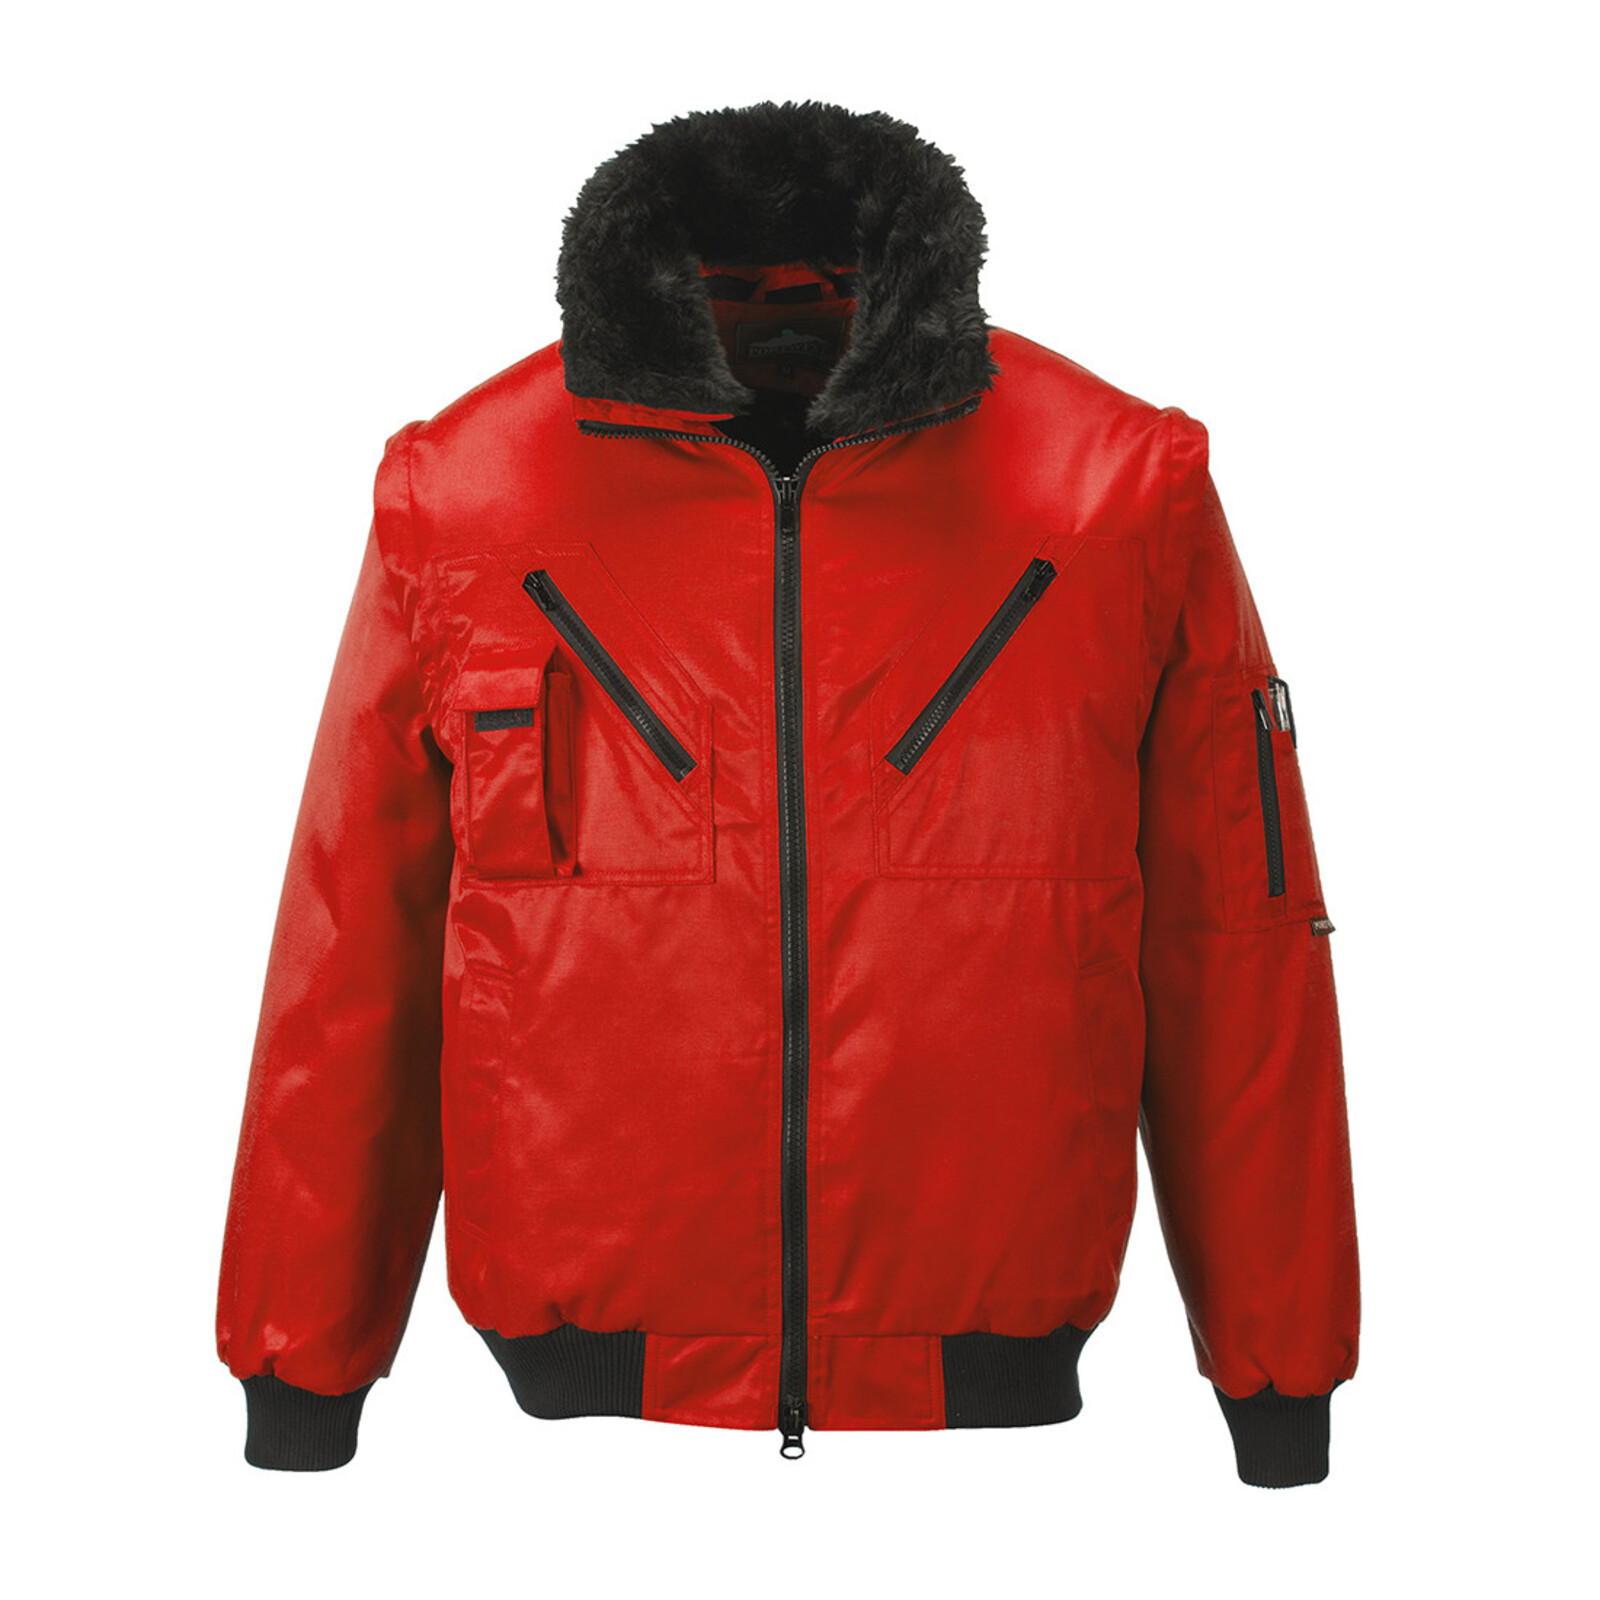 Pánska zimná bunda Portwest Pilot PJ10 4v1  - veľkosť: 5XL, farba: červená